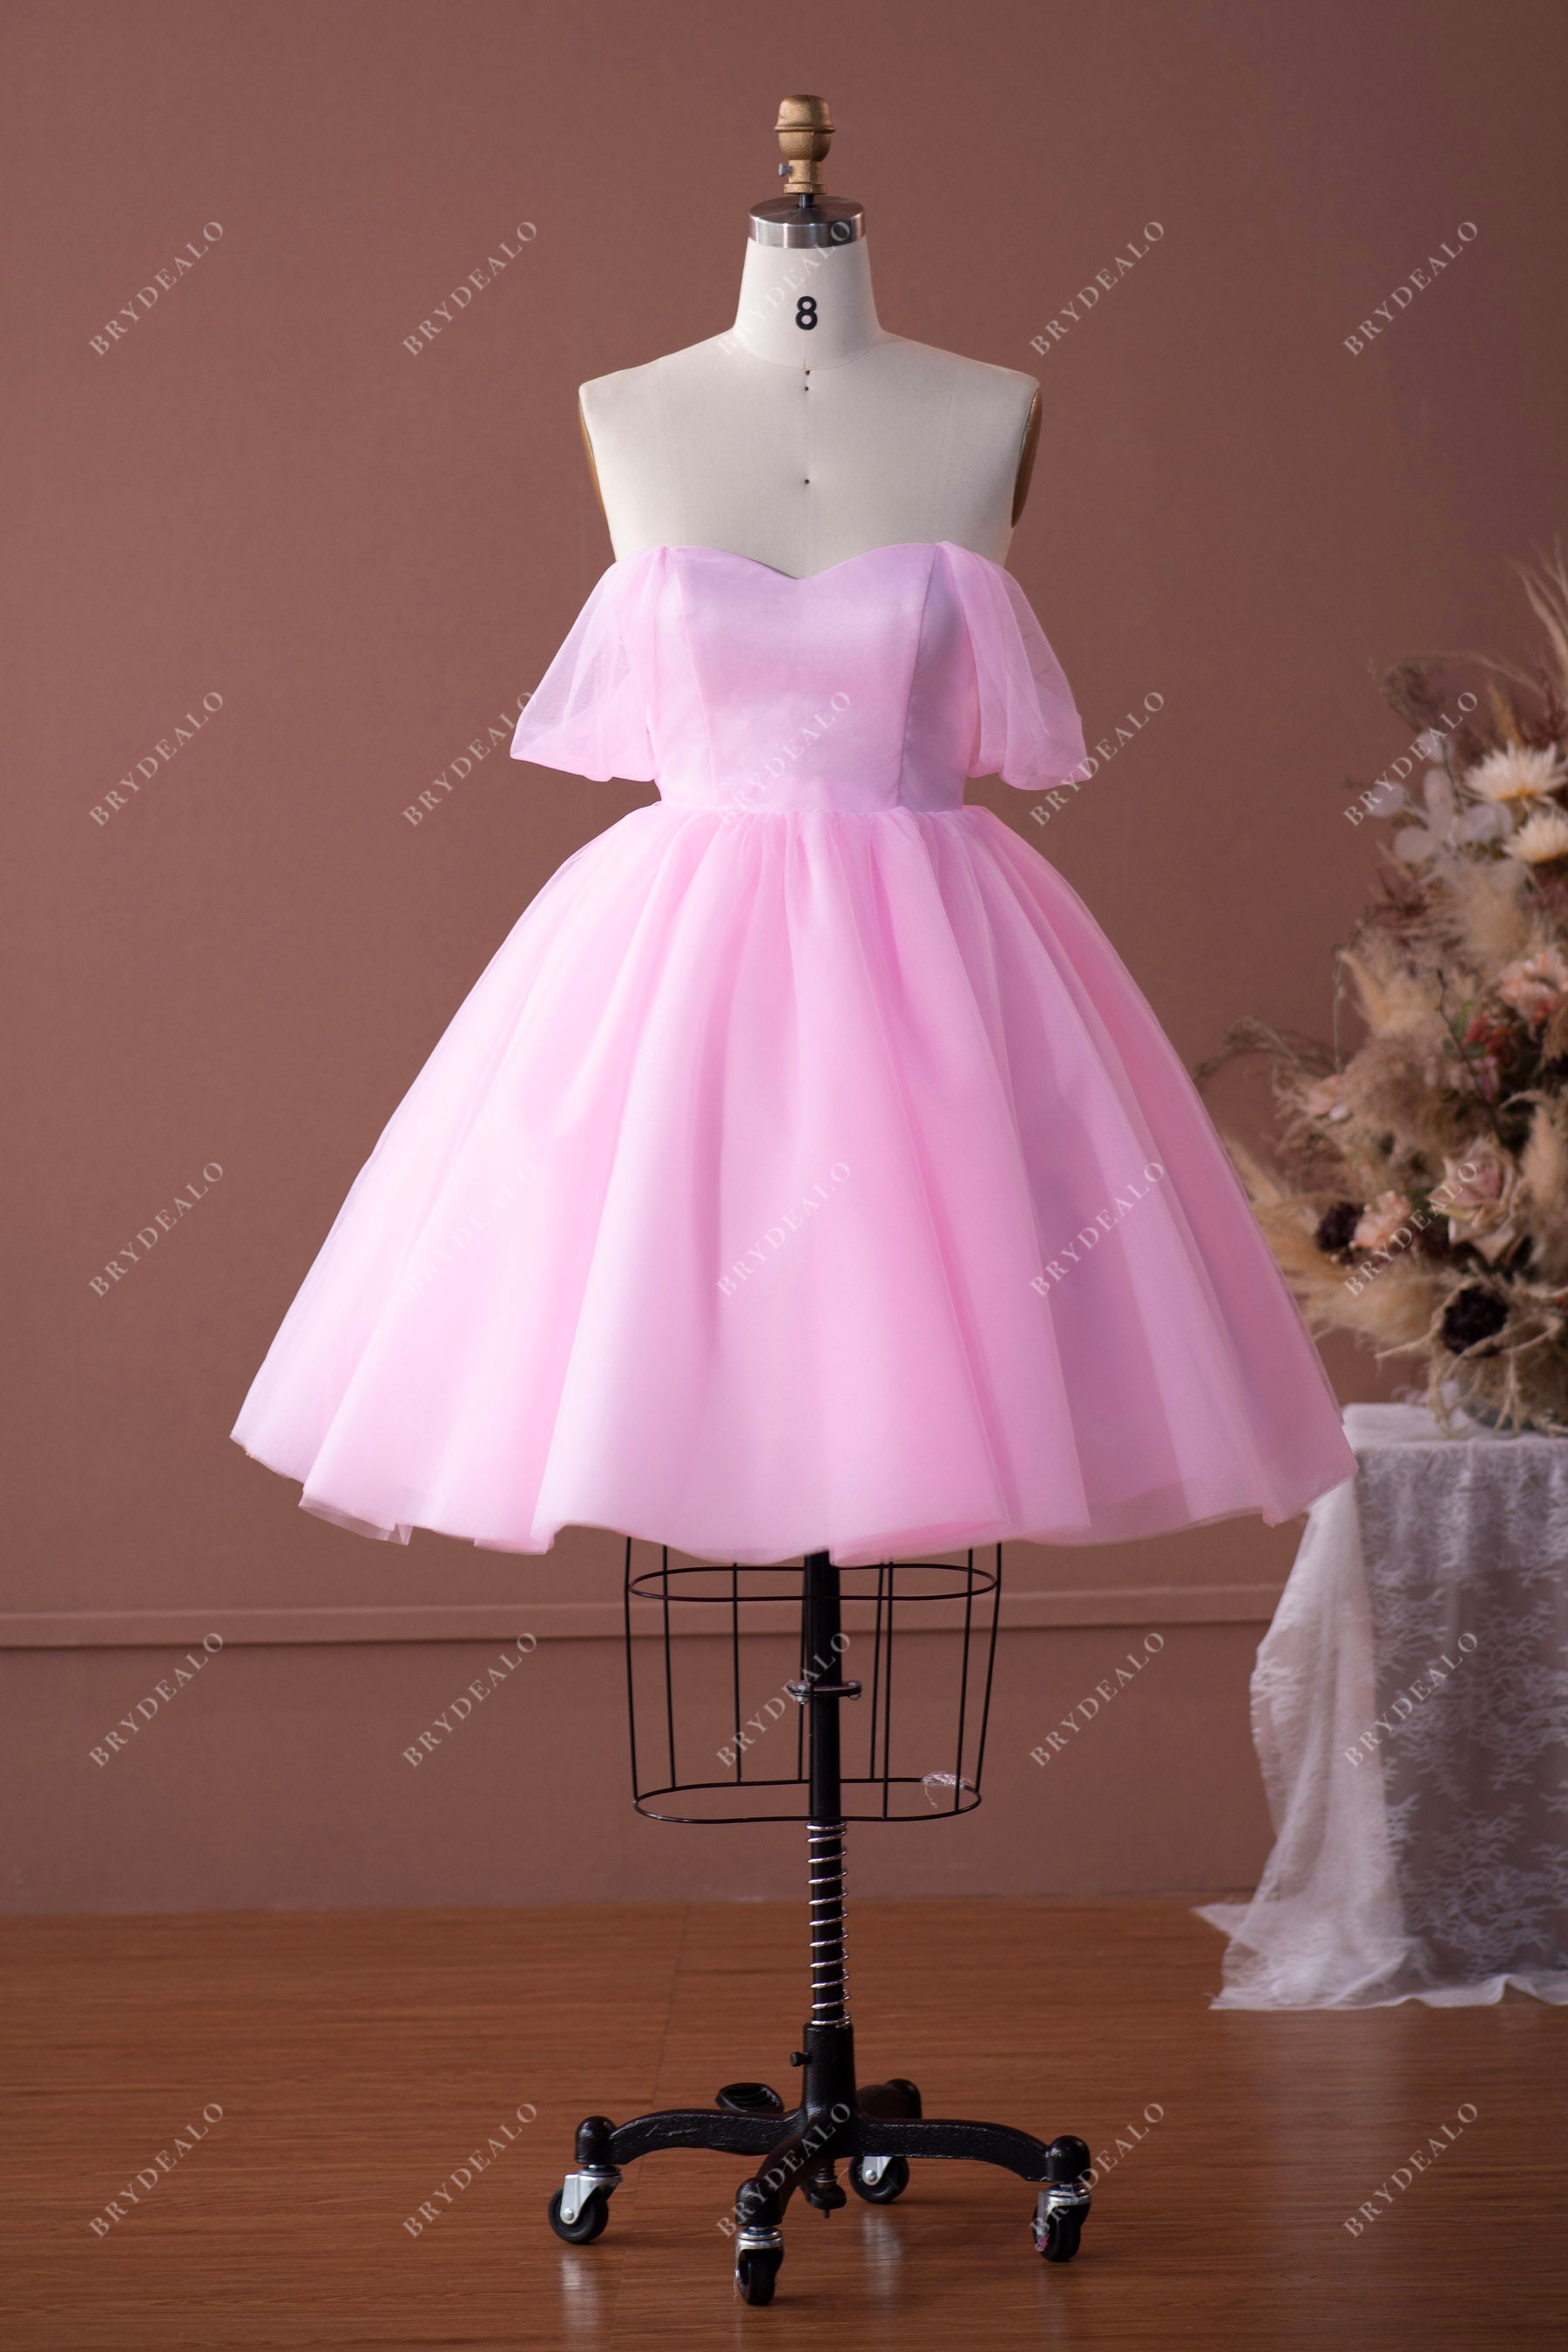 puffy pink dress